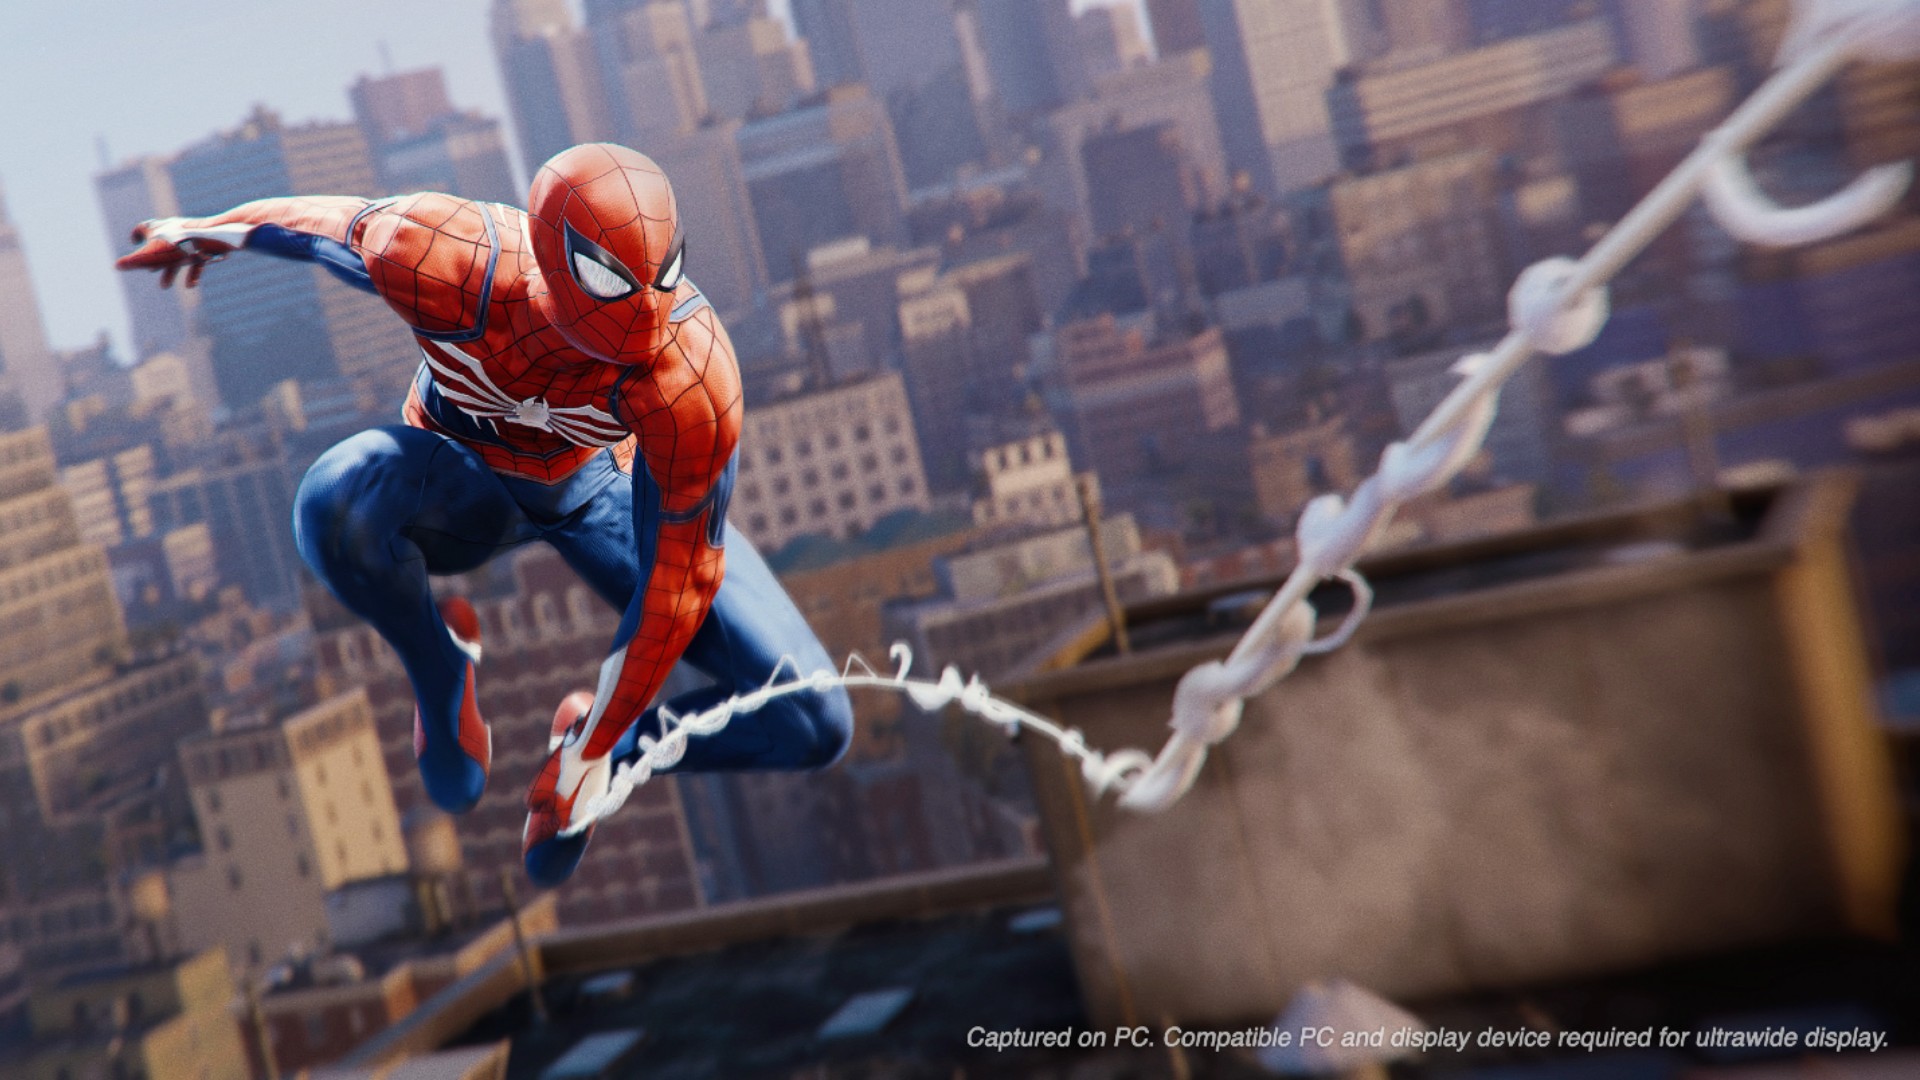 Kotobukiya Miles Morales Spider-Man ARTFX+ Statue! - Marvel Toy News